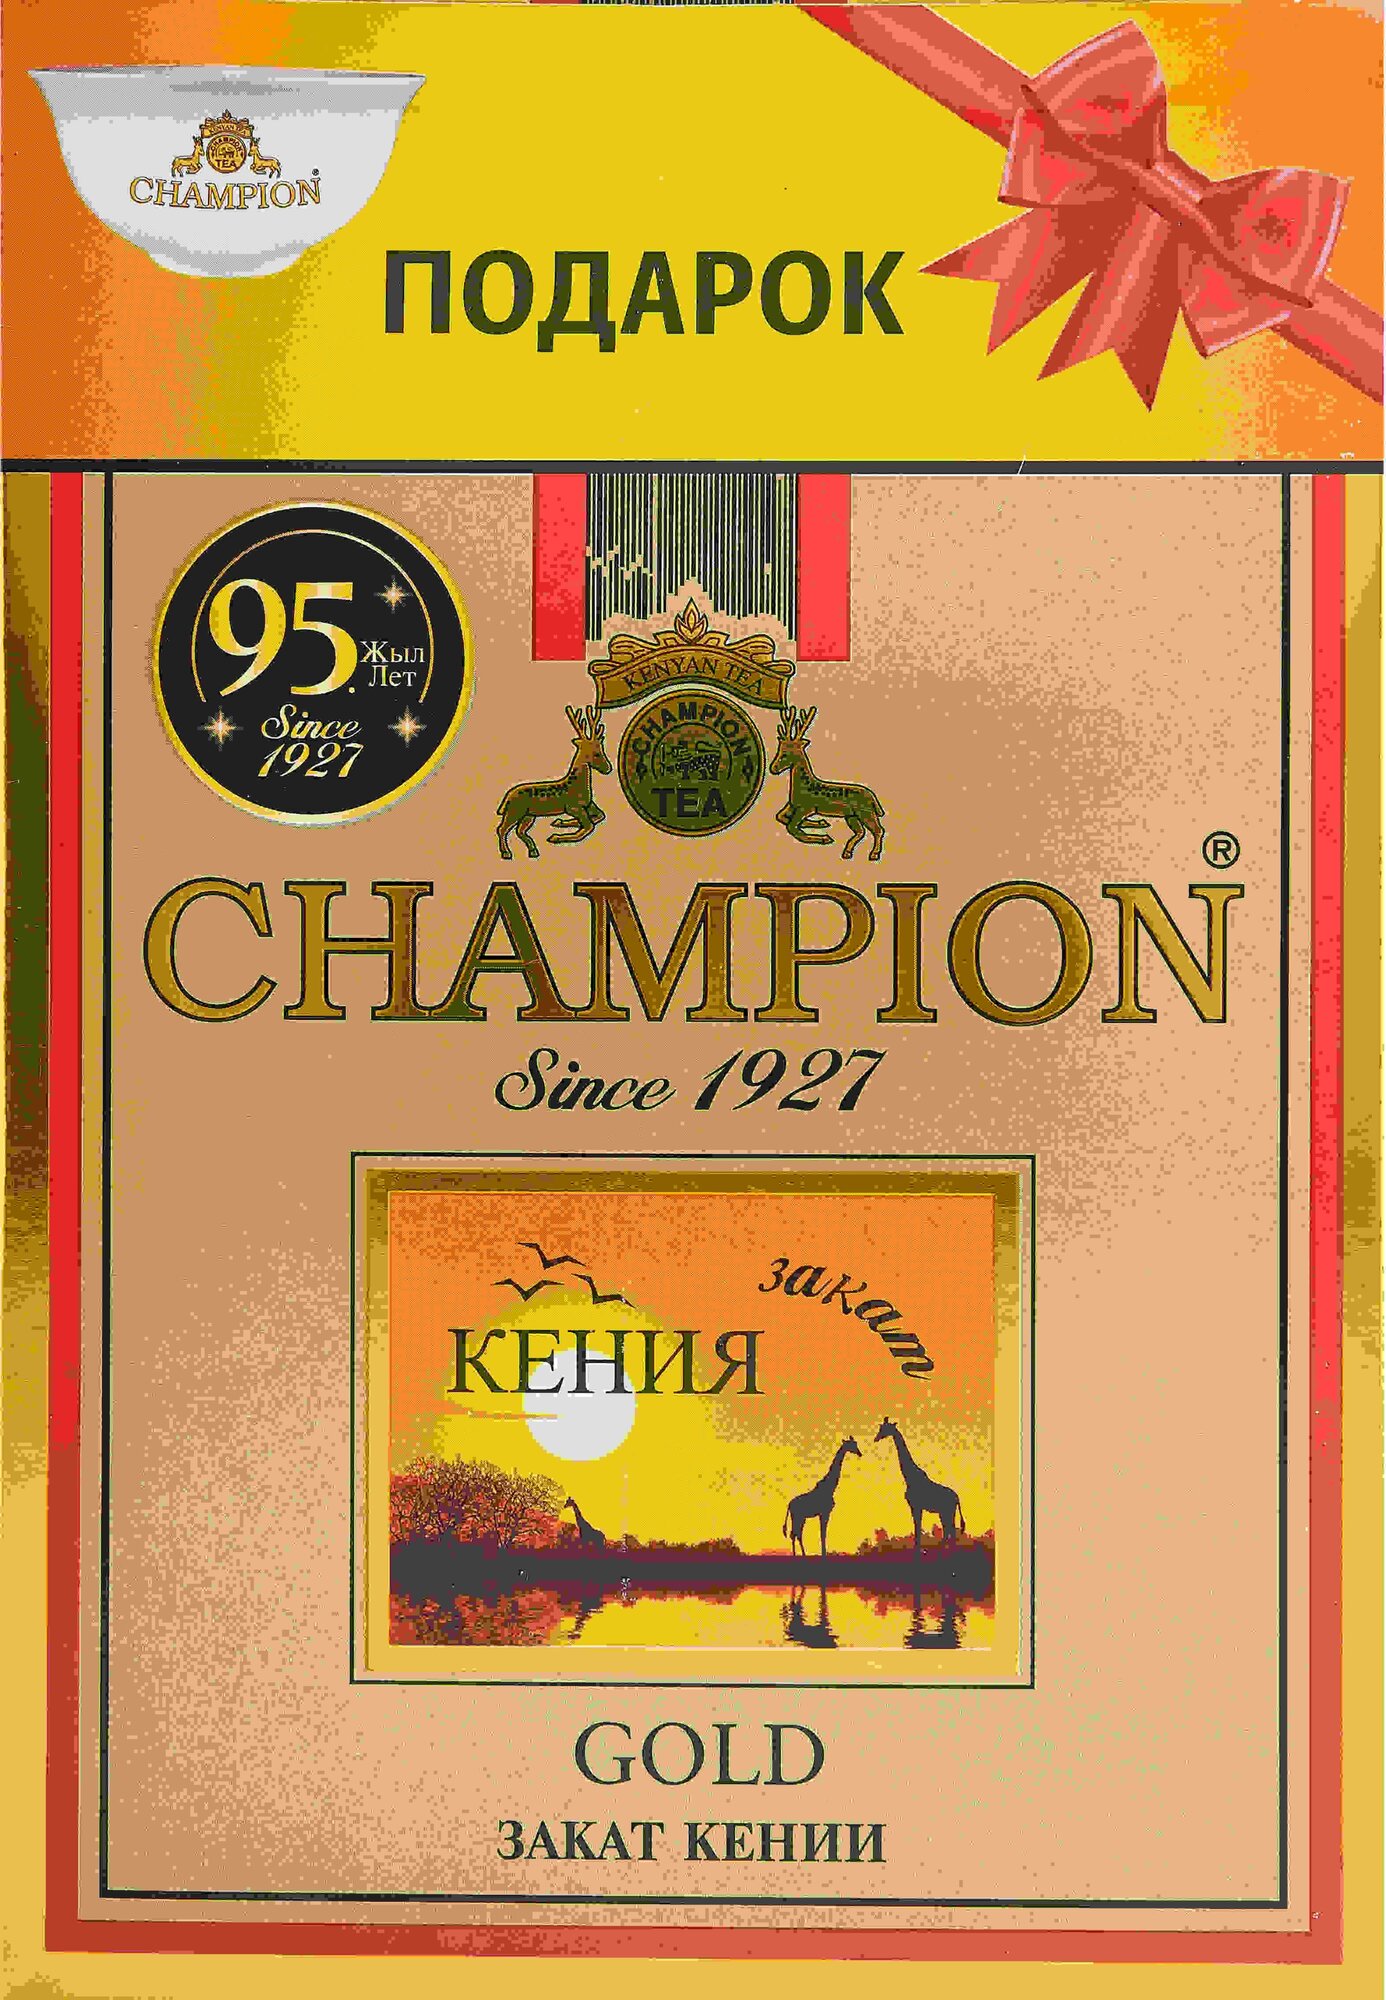 Черный чай Чемпион и пиала в подарок Кенийский, 500грамм - фотография № 3